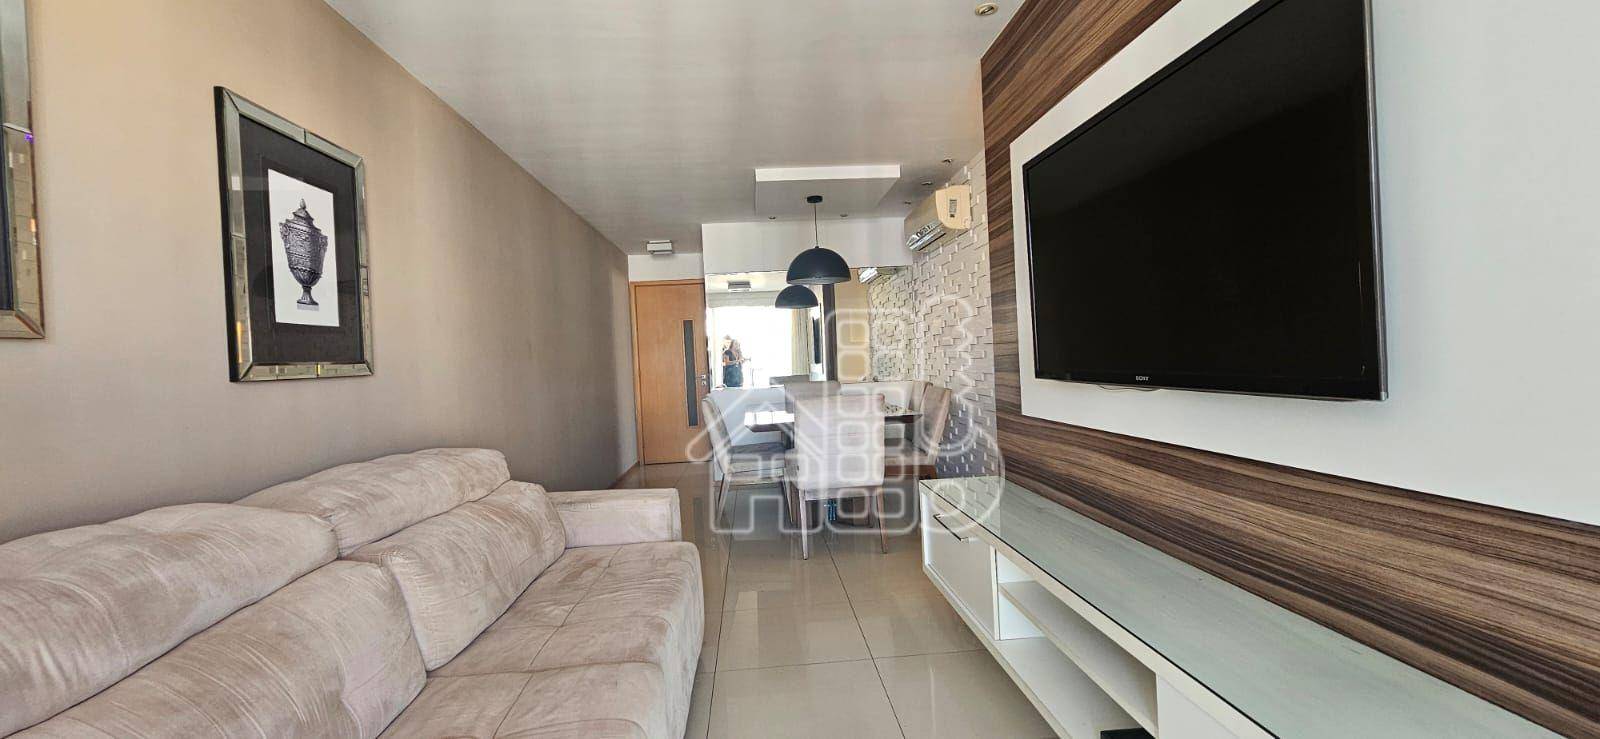 Apartamento com 3 dormitórios para alugar, 95 m² por R$ 6.140,00/mês - Icaraí - Niterói/RJ